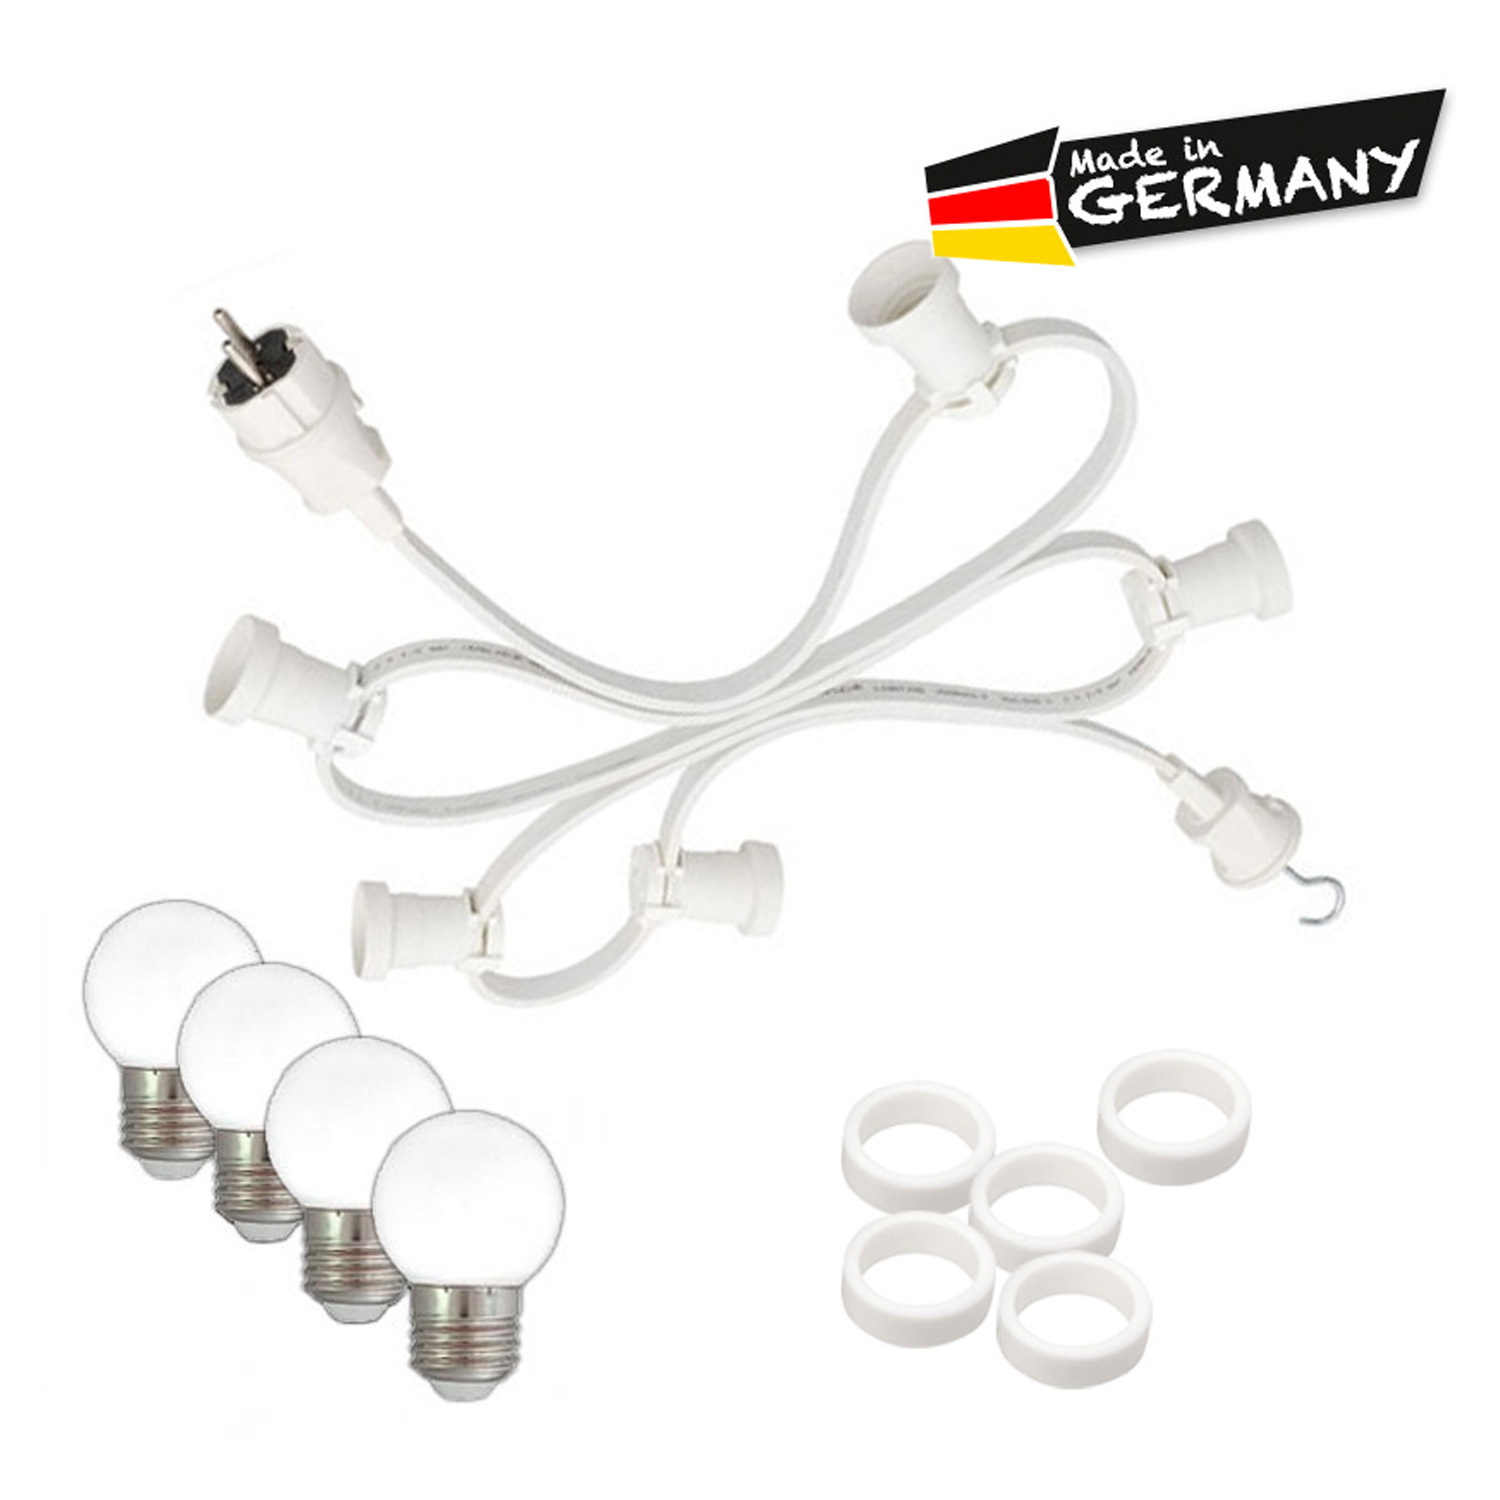 Illu-/Partylichterkette 20m - Außenlichterkette - Made in Germany - 40 x warmweiße LED Kugellampen